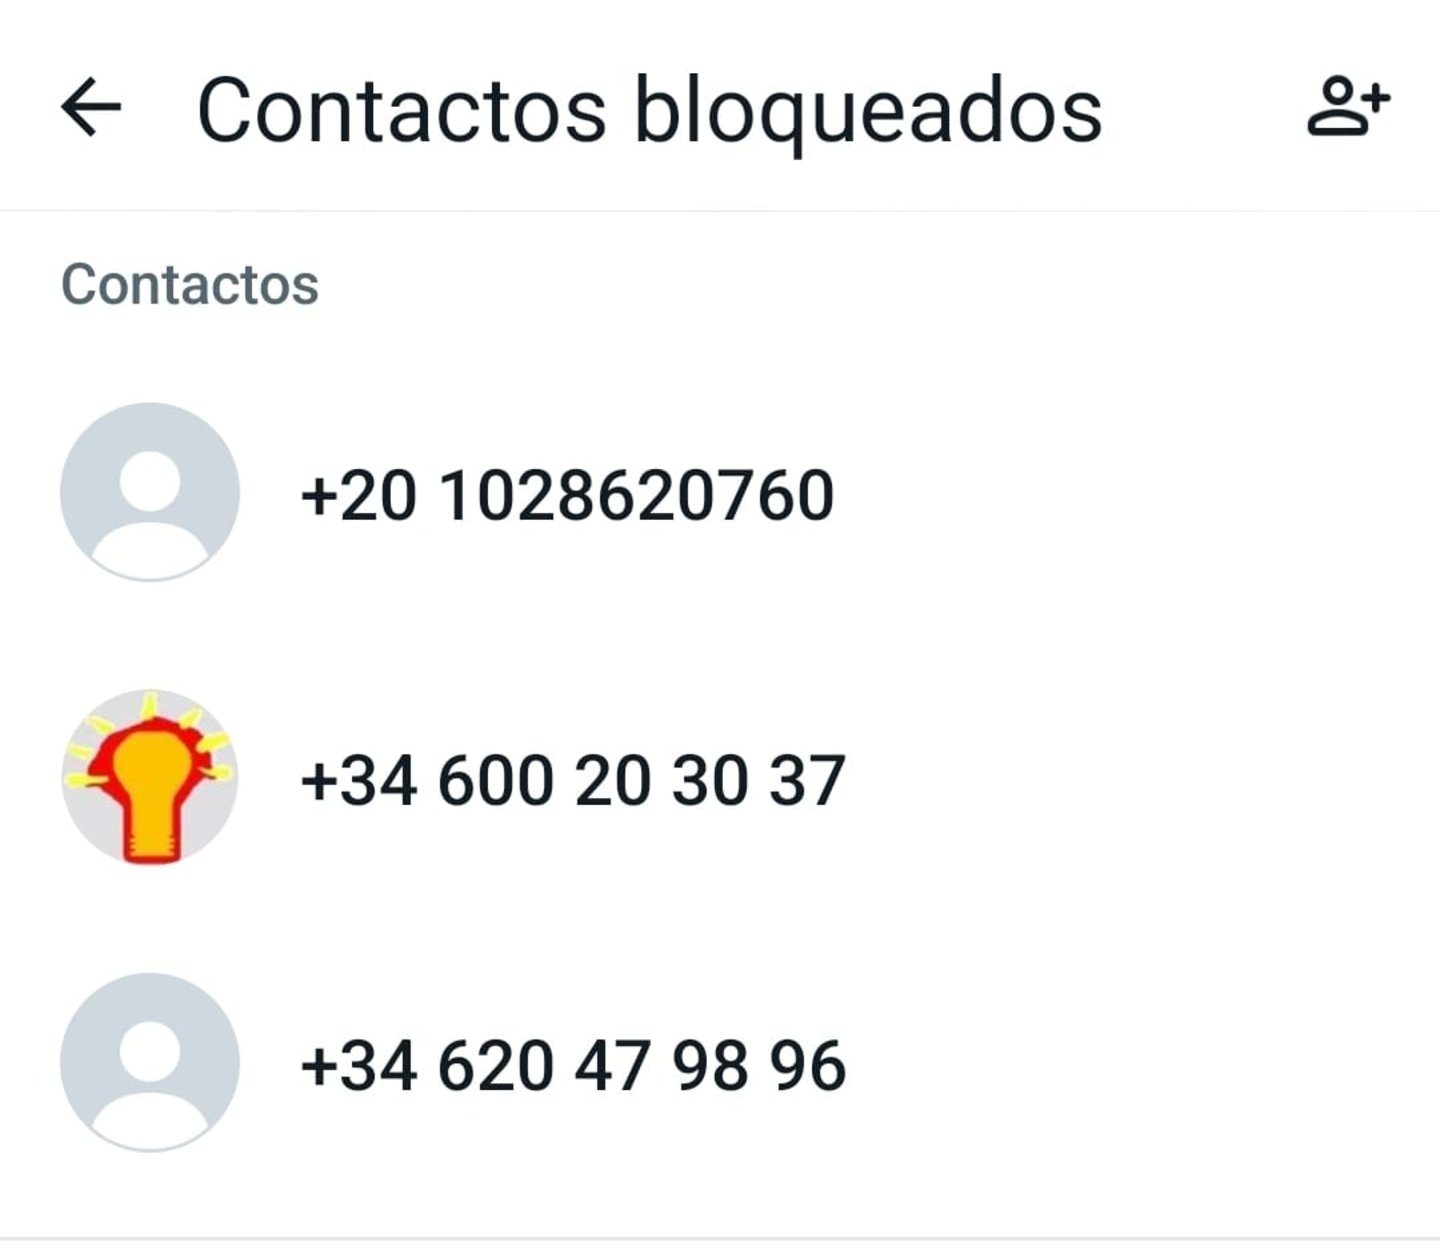 Listado de contactos bloqueados en WhatsApp